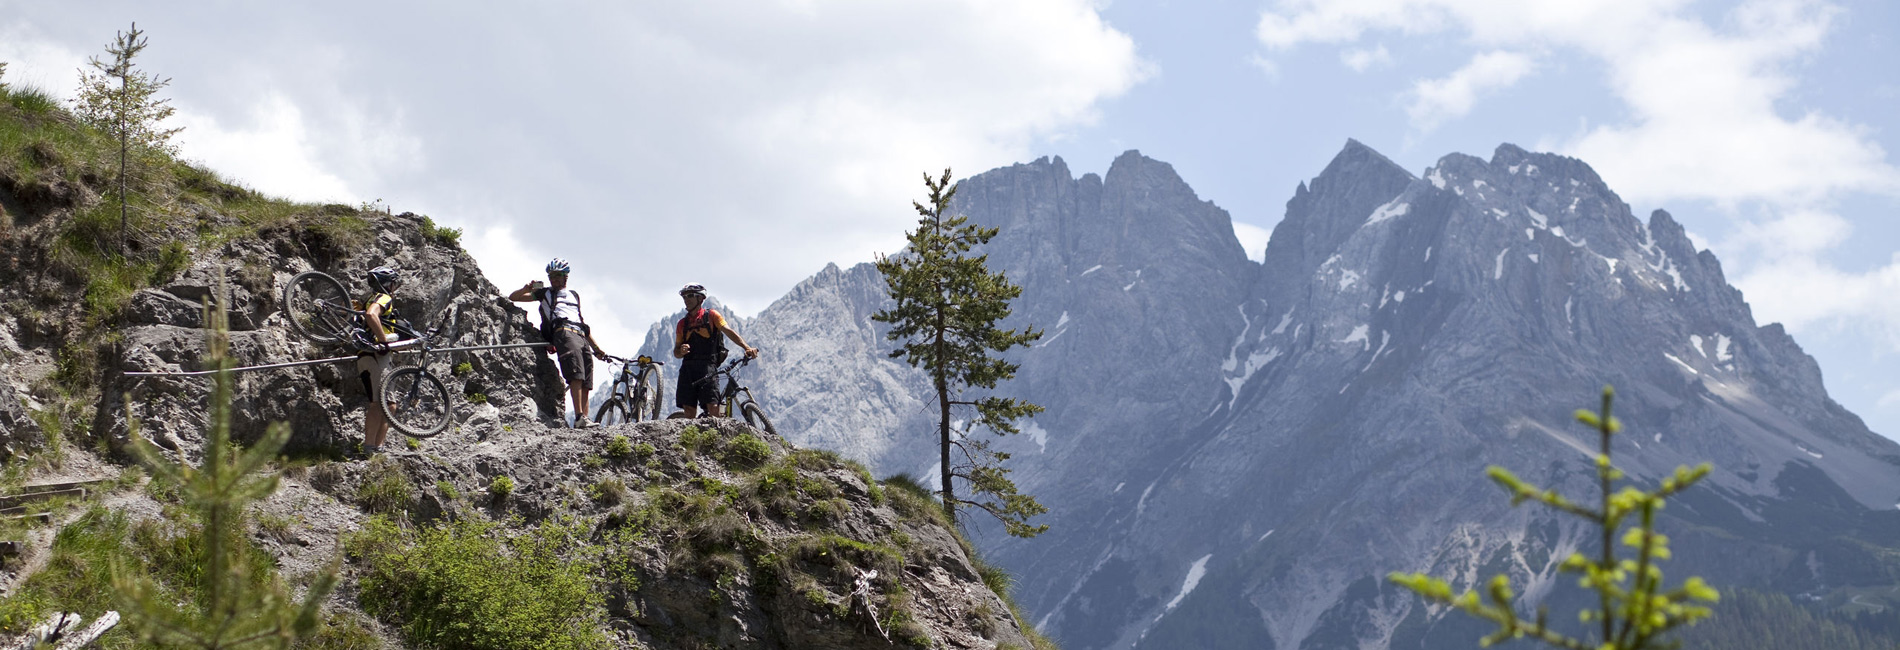 Uphillbiken und Trail biken in Lermoos - Bikeurlaub Tirol - copyright Tirol Werbung